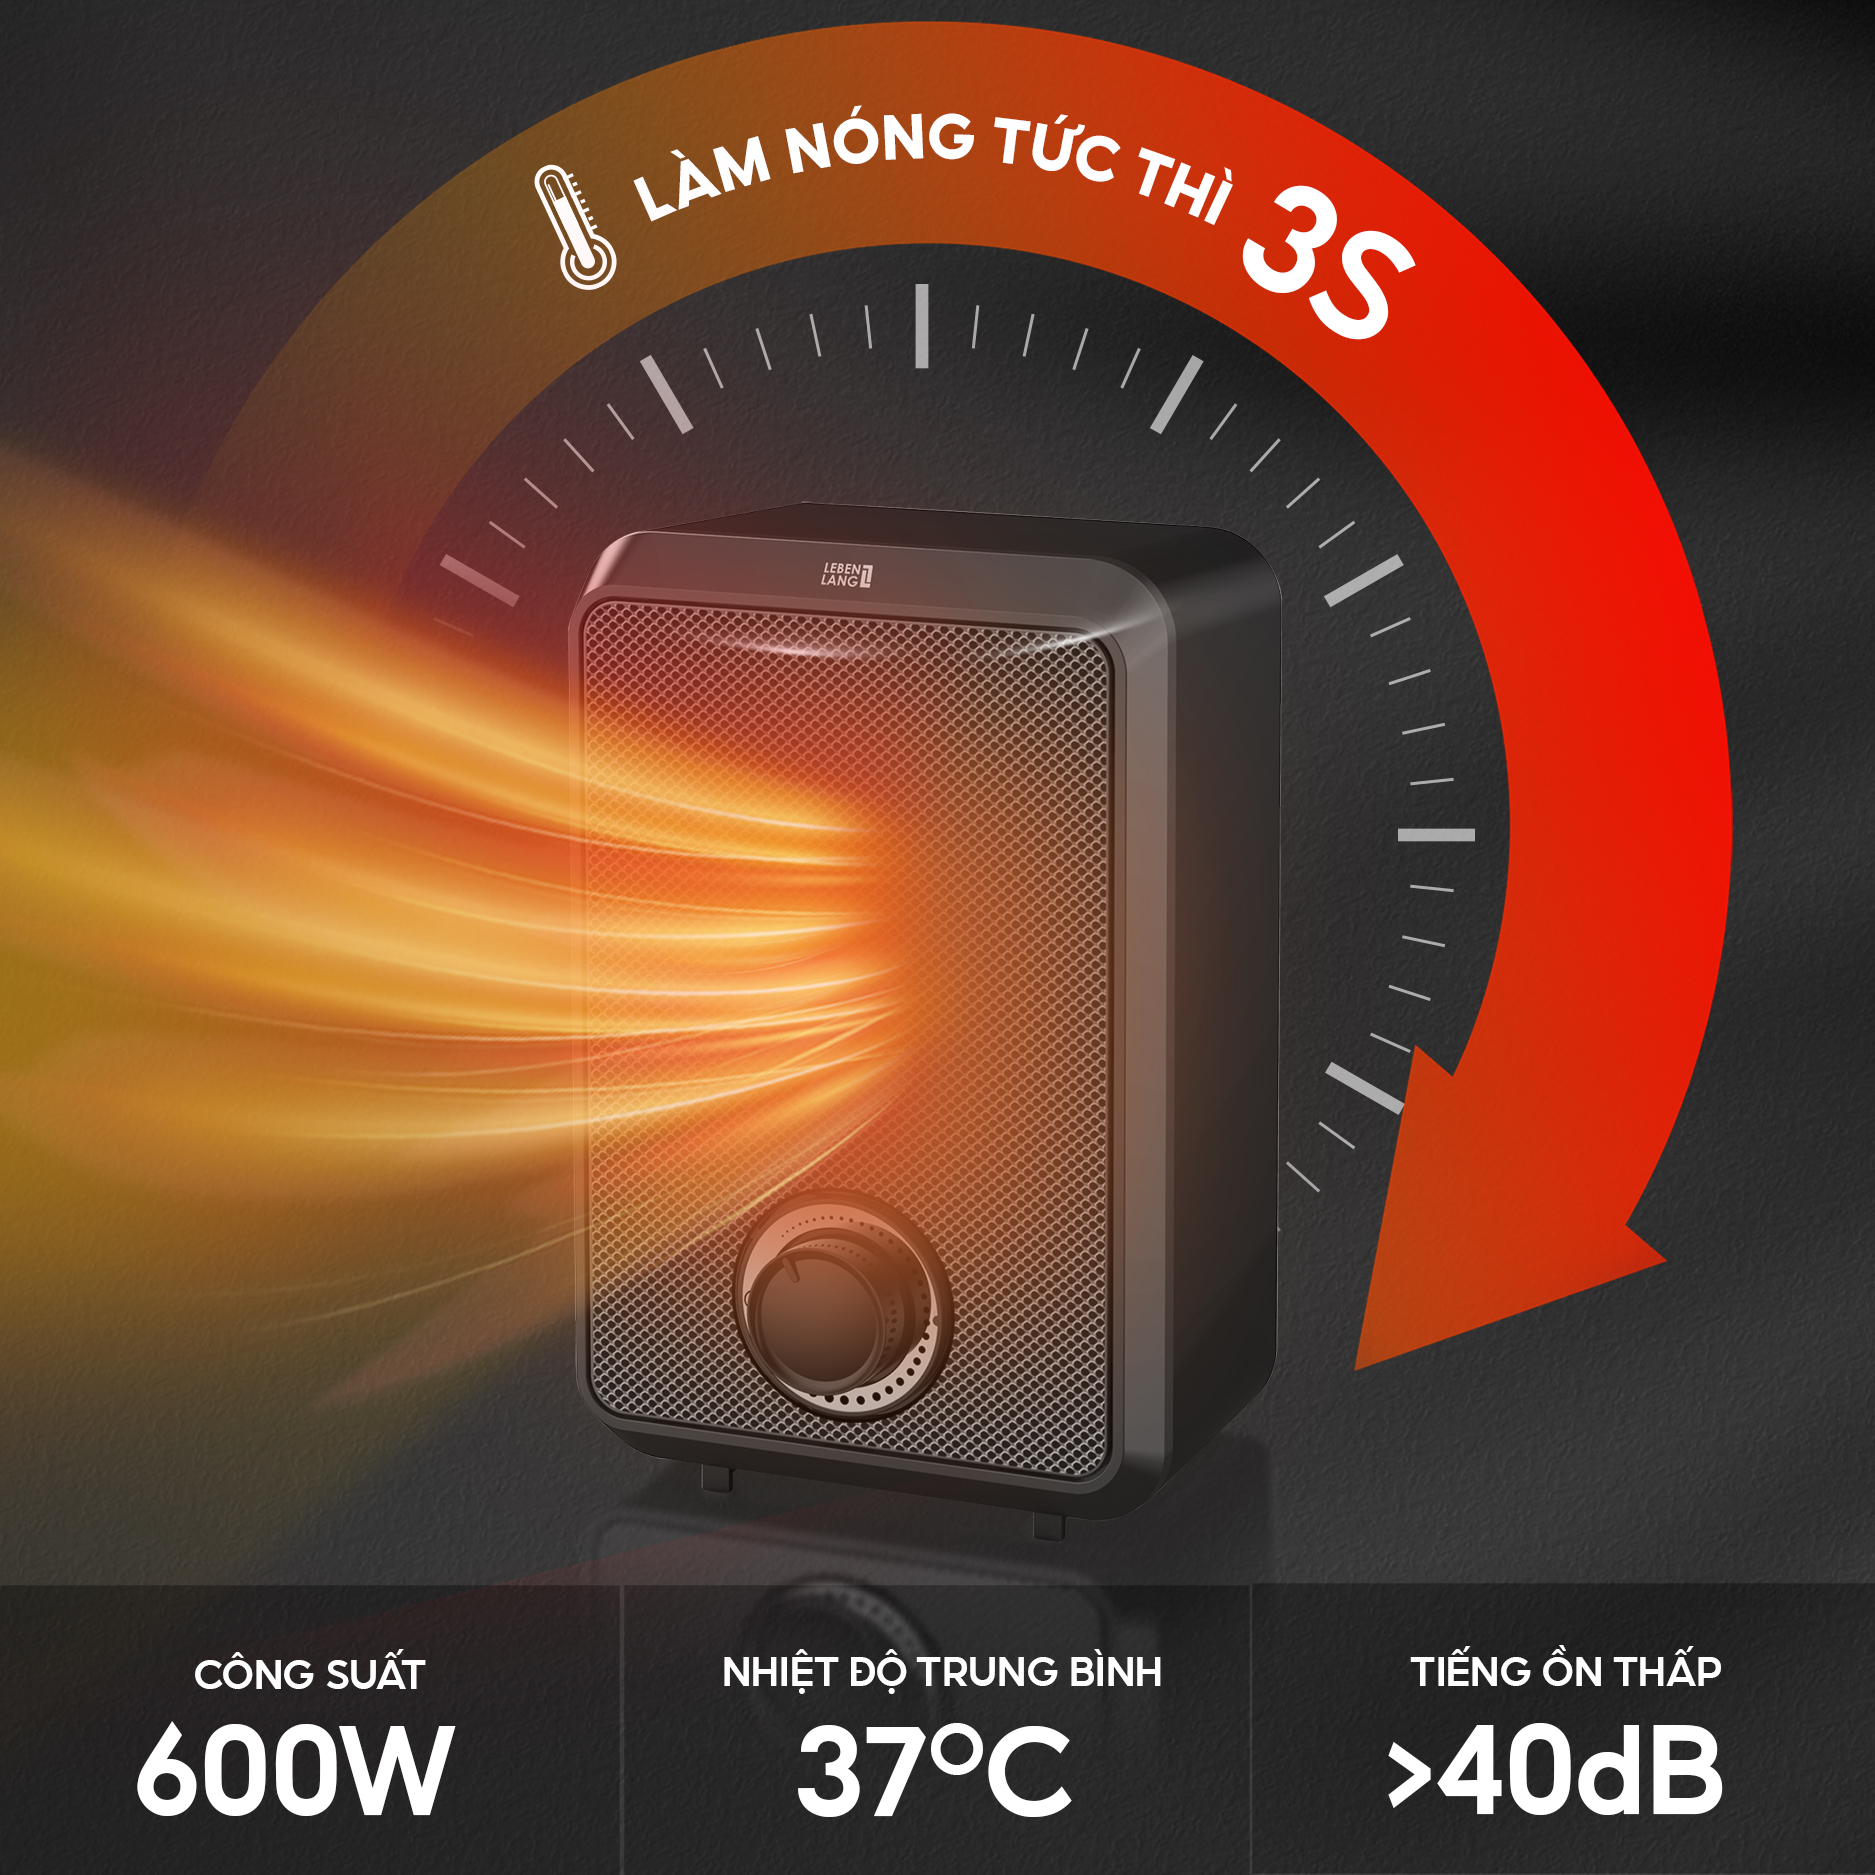 Máy sưởi mini để bàn Lebenlang LBL0276, công suất 600W, làm ấm góc rộng, nóng nhanh, thiết kế nhỏ gọn tiện lợi, bảo hành 2 năm - hàng chính hãng